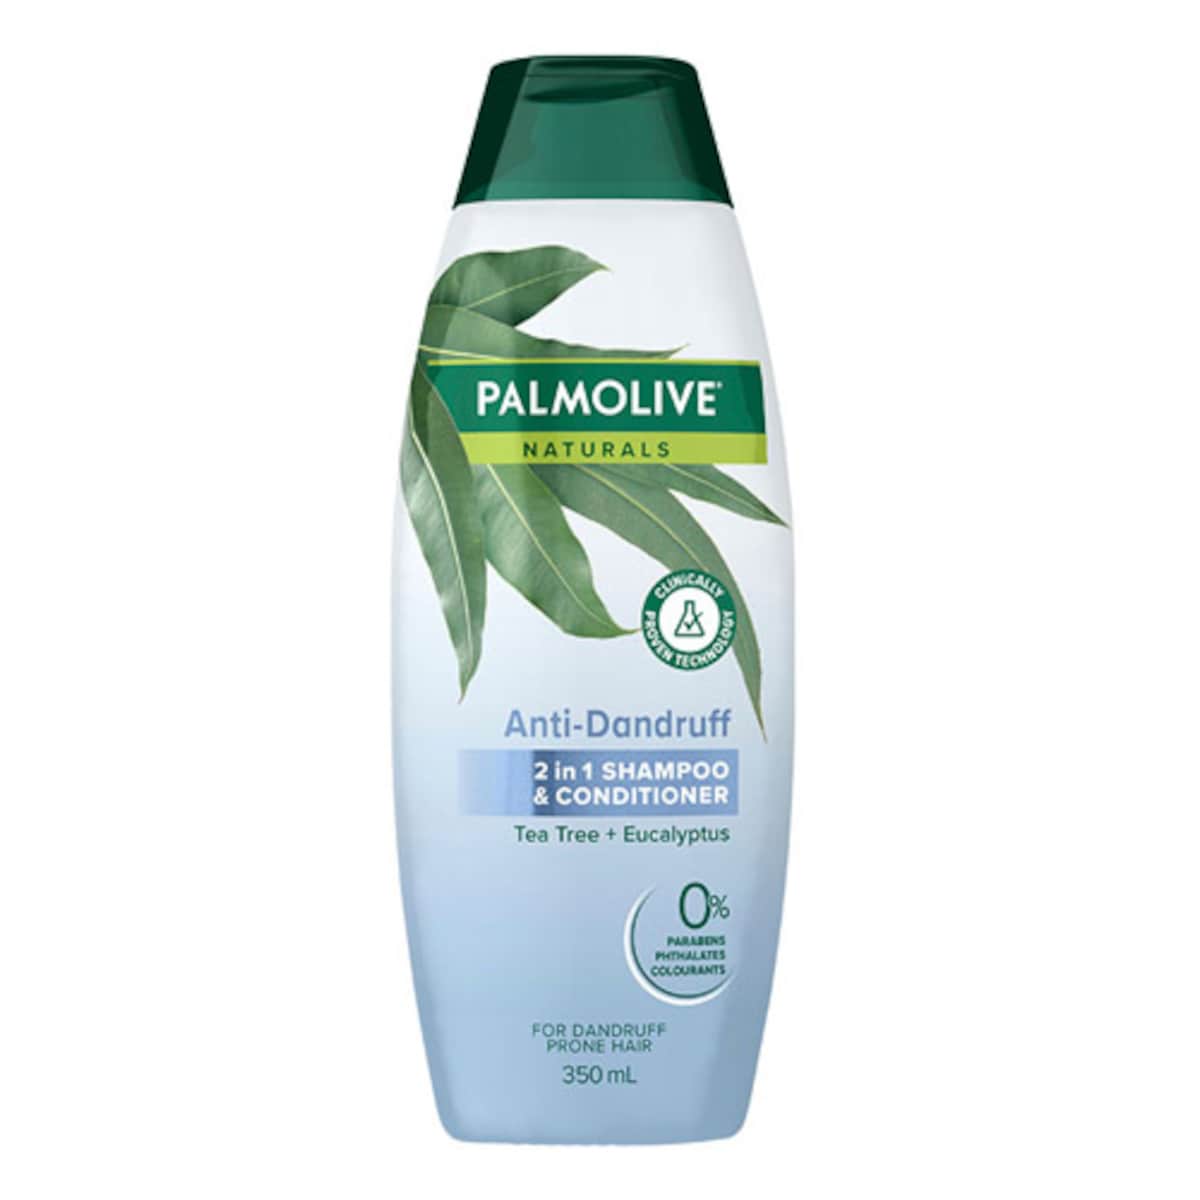 Palmolive Anti-Dandruff 2 in 1 Shampoo & Conditioner 350ml